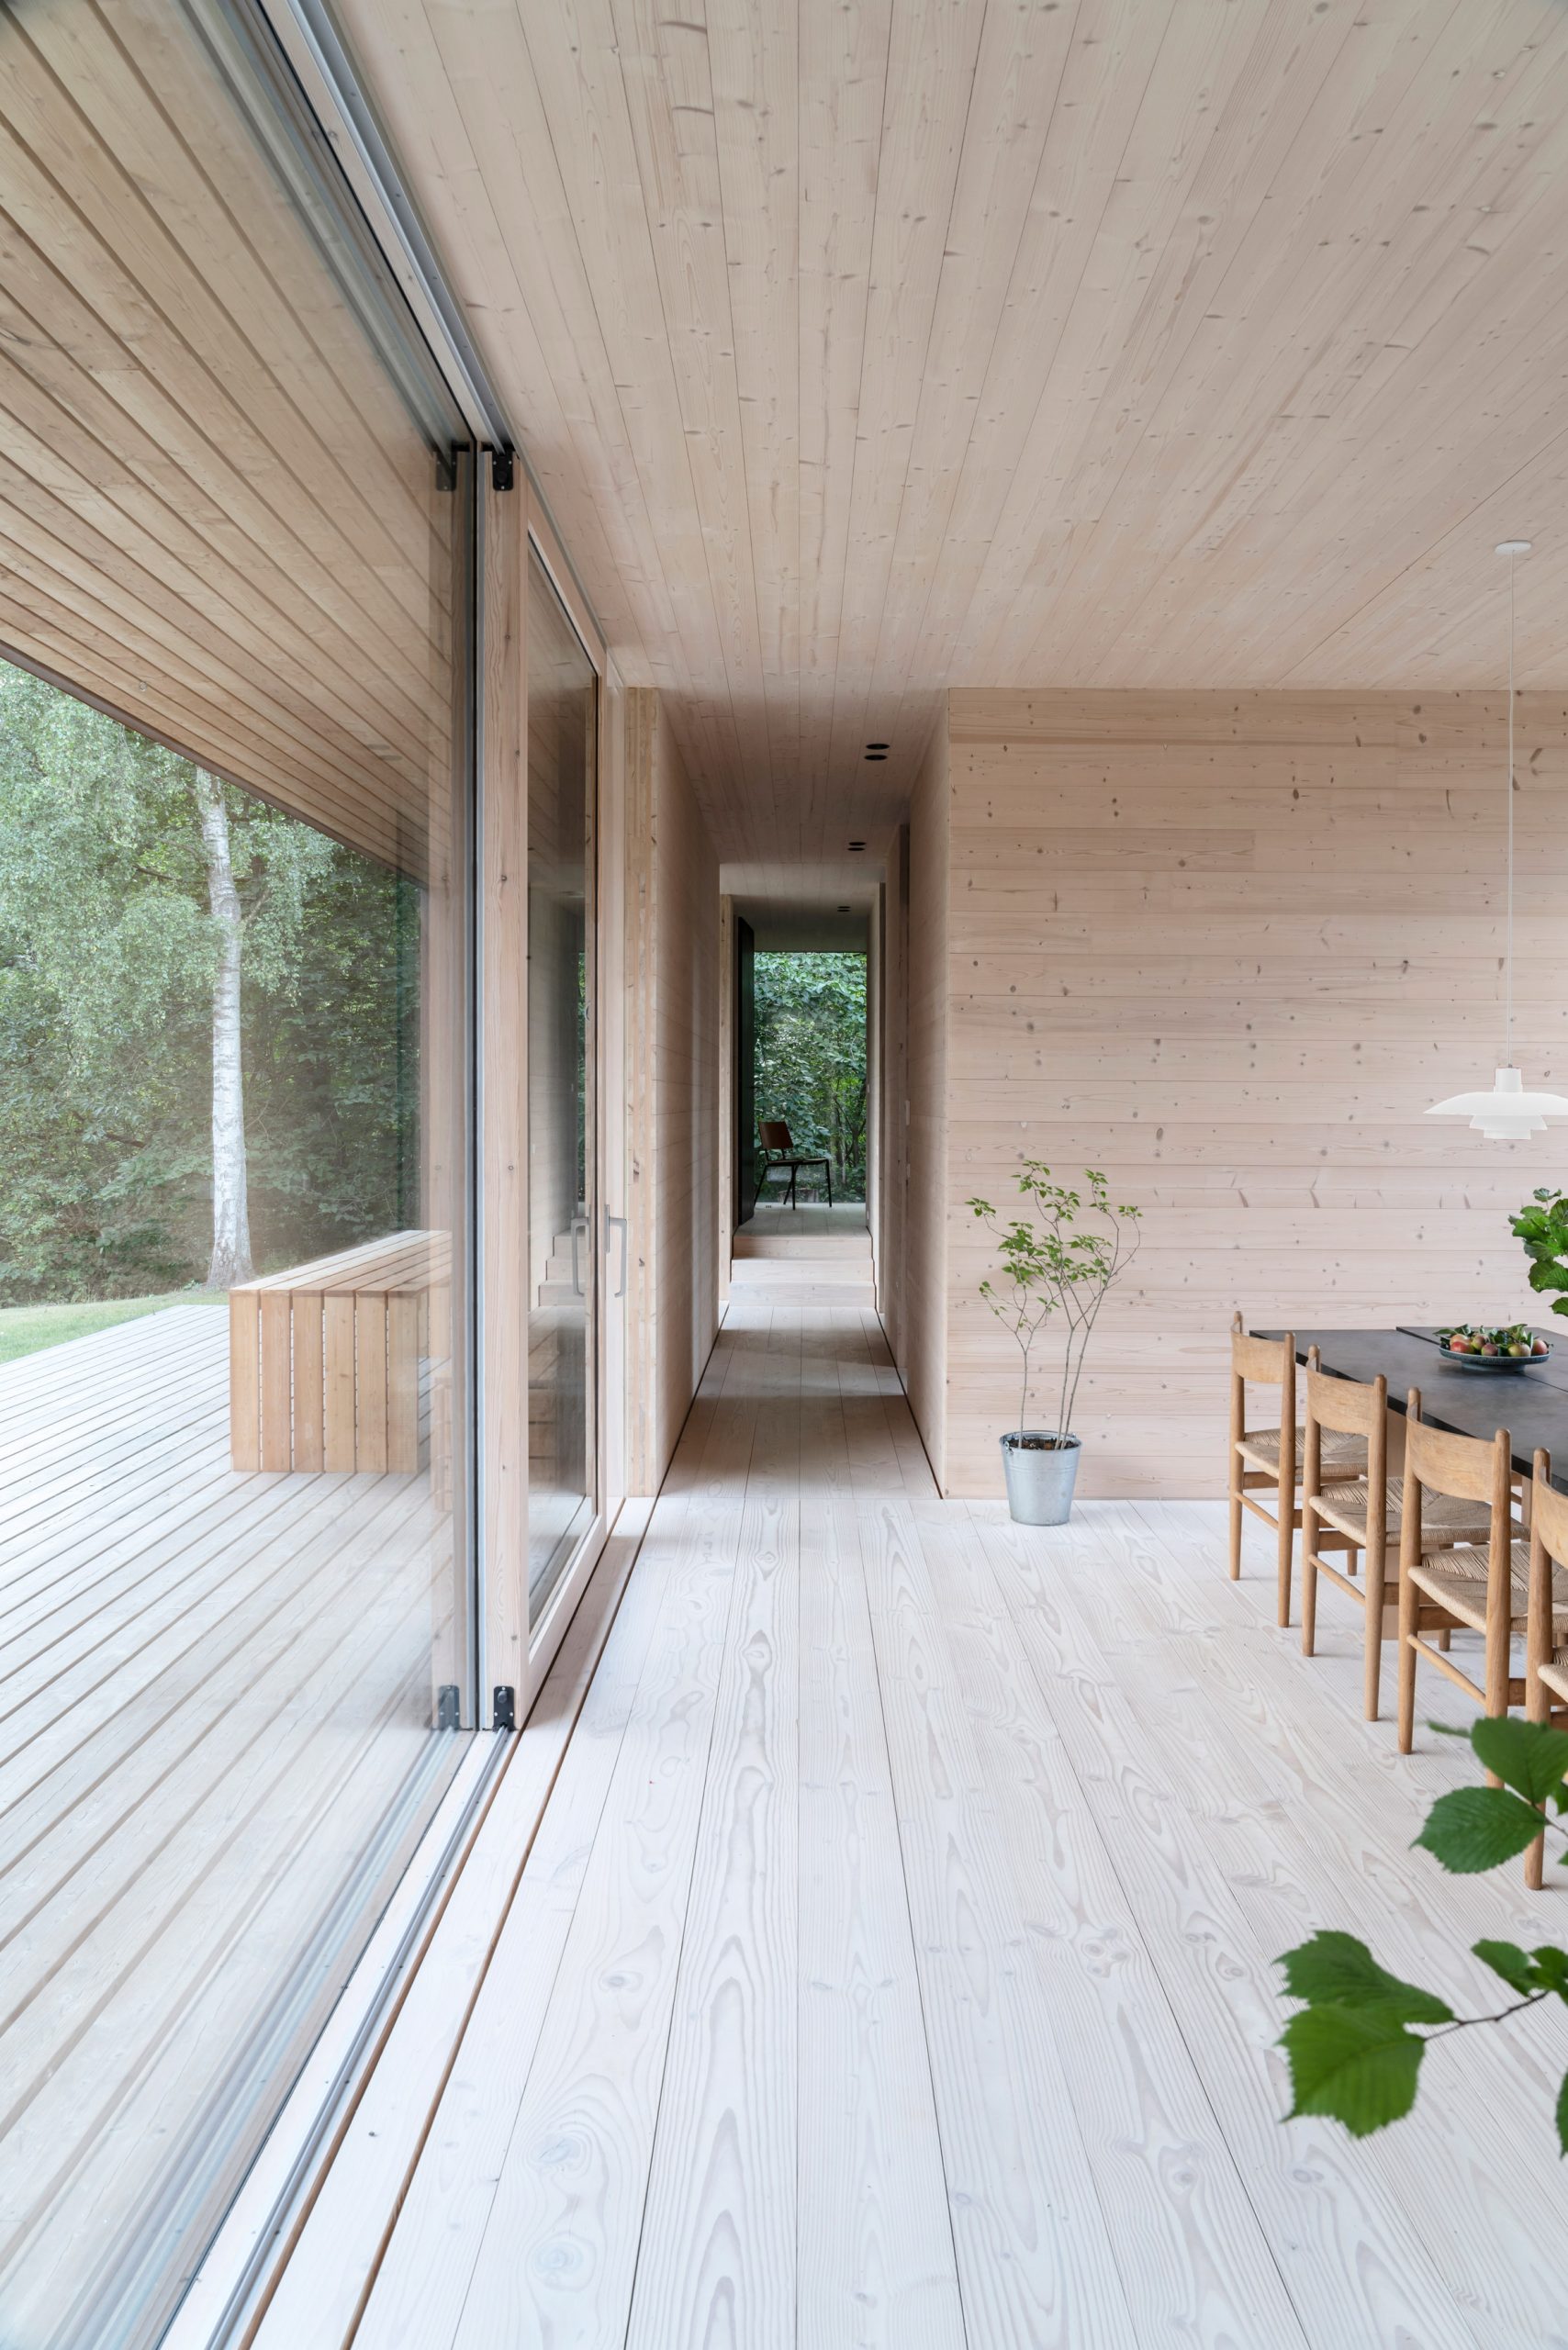 Timber-clad interior of CLT villa